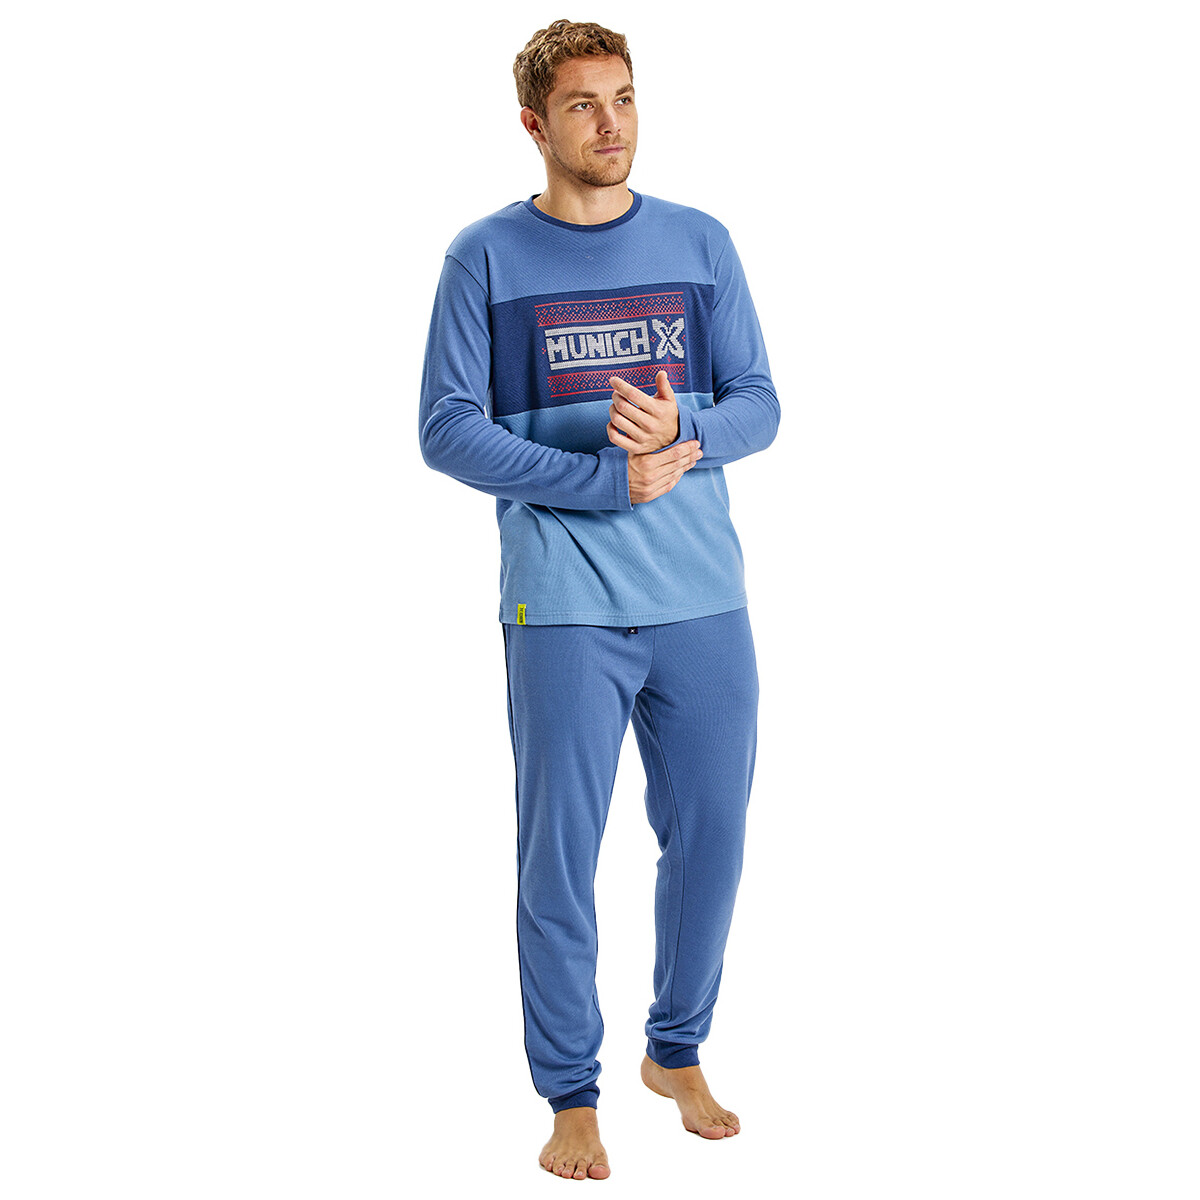 Textiel Heren Pyjama's / nachthemden Munich MUDP0252 Blauw